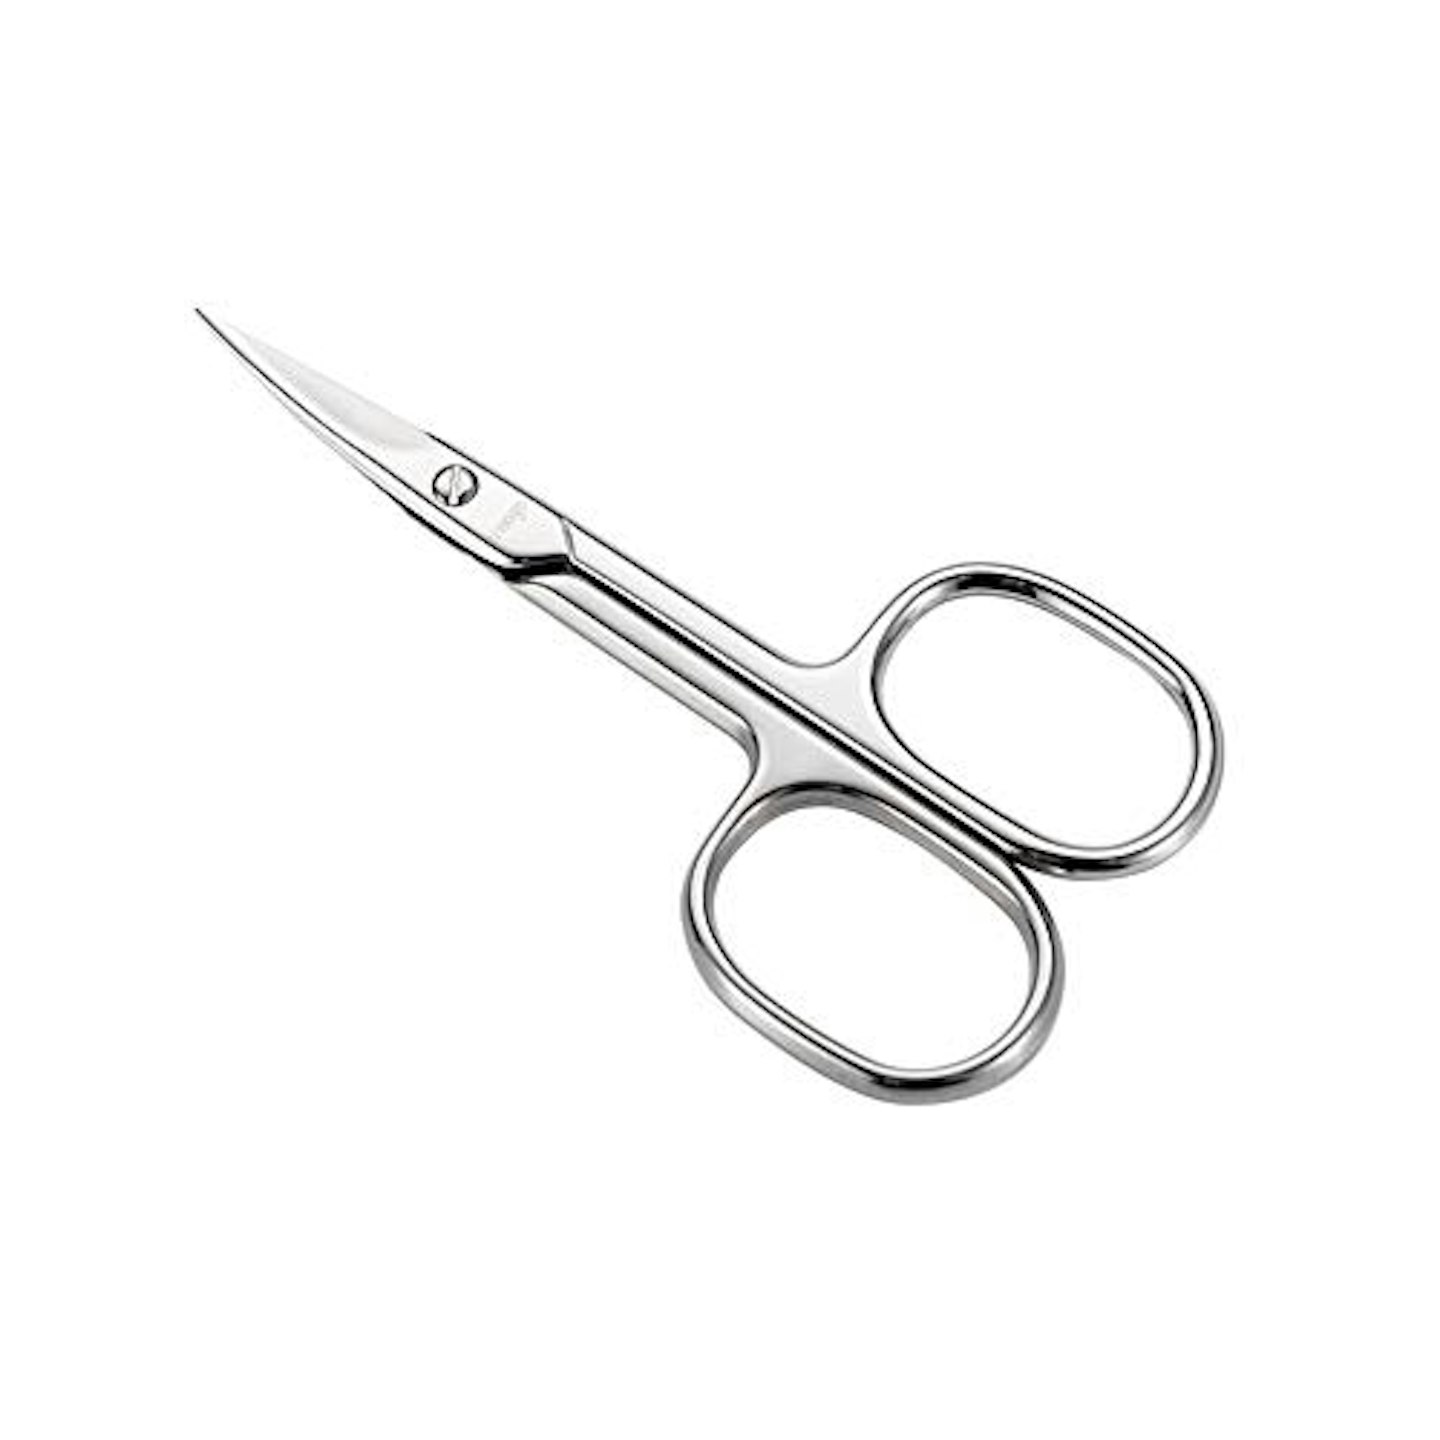 LIVINGO Premium Manicure Scissors 